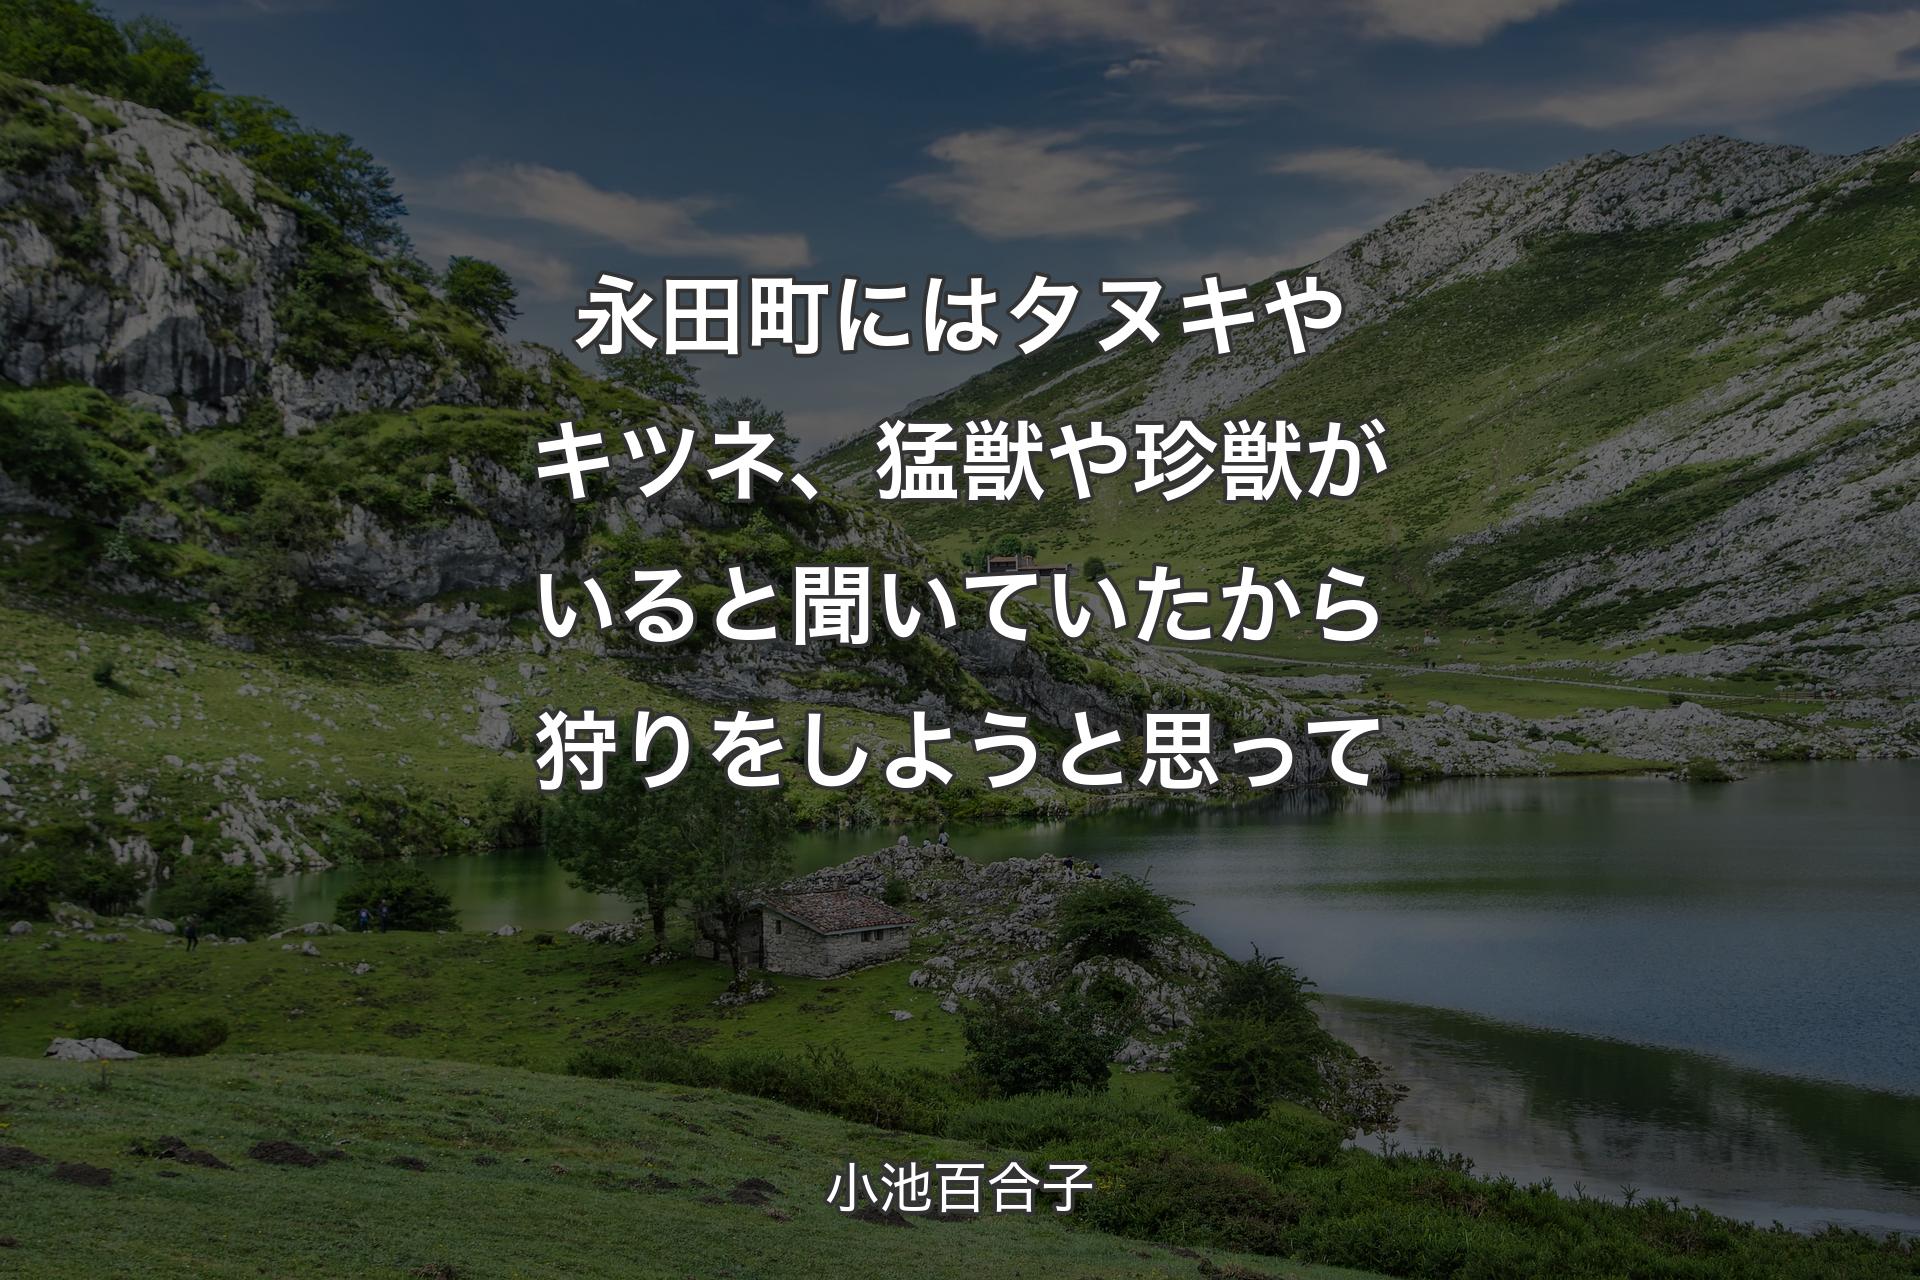 【背景1】永田町にはタヌキやキツネ、猛獣や珍獣がいると聞いていたから狩りをしようと思って - 小池百合子